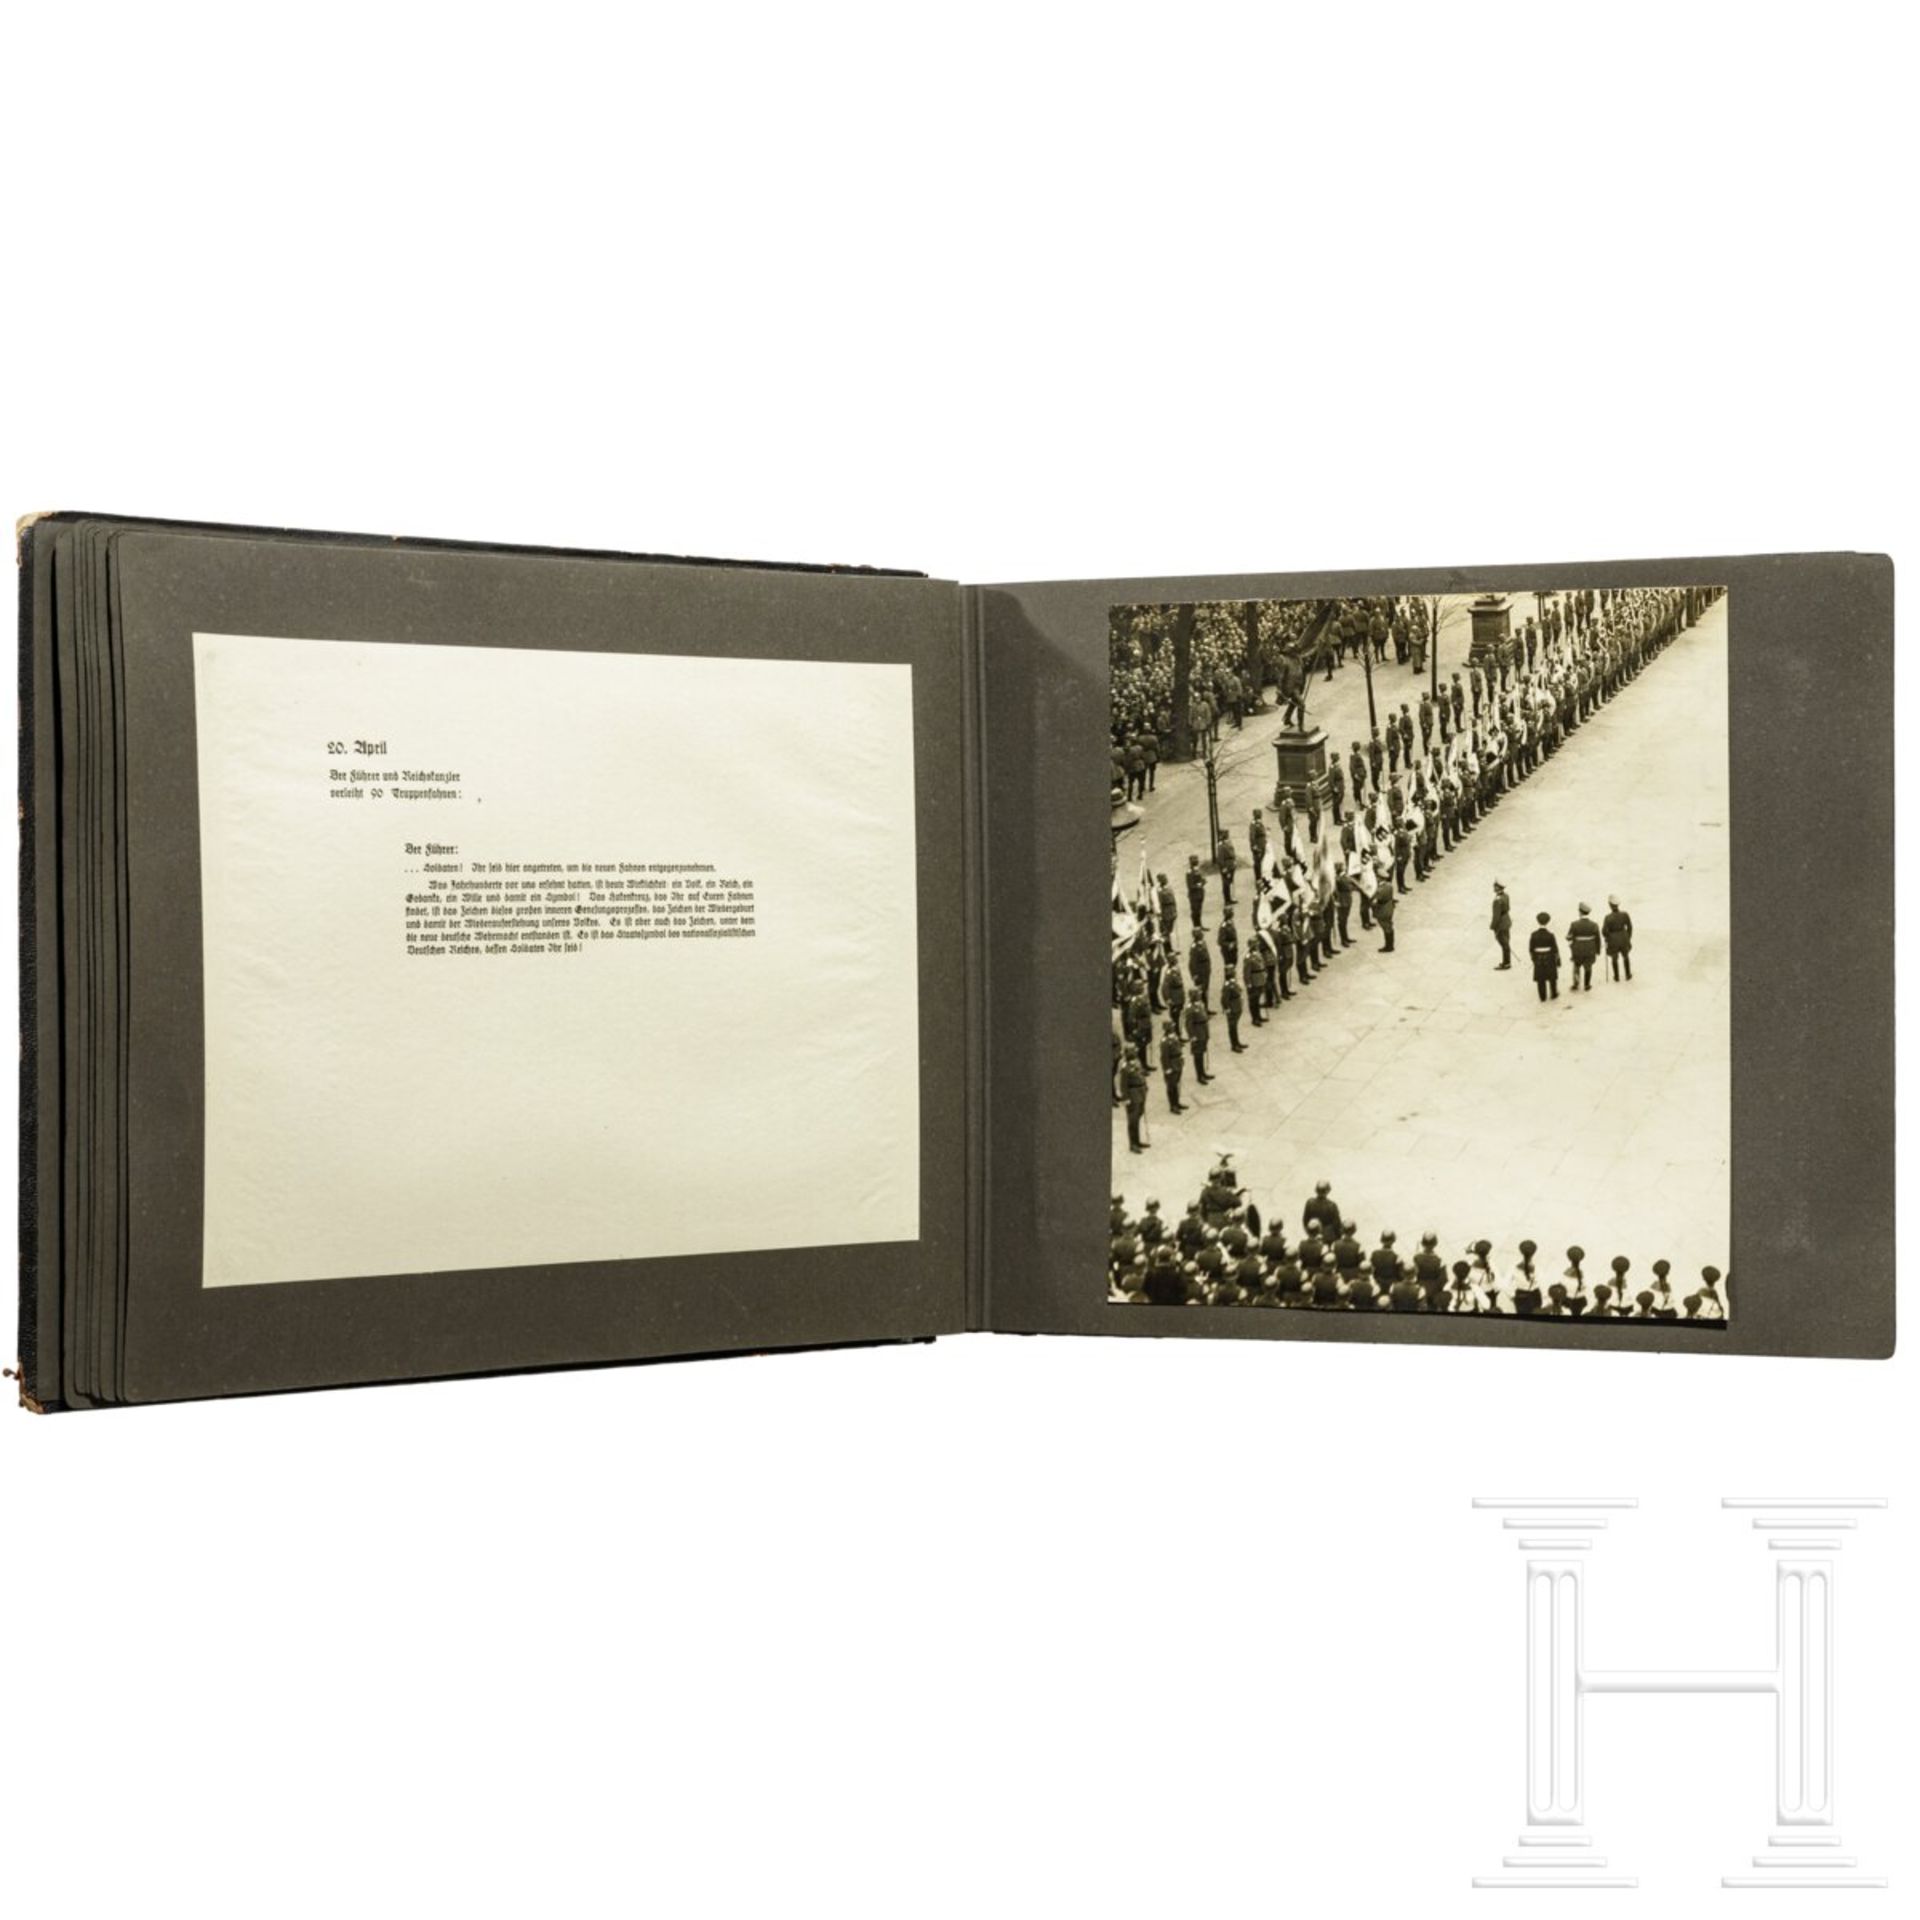 Geschenk-Fotoalbum der Partei 1937 mit 56 großformatigen Fotos und Textblättern - Image 14 of 17